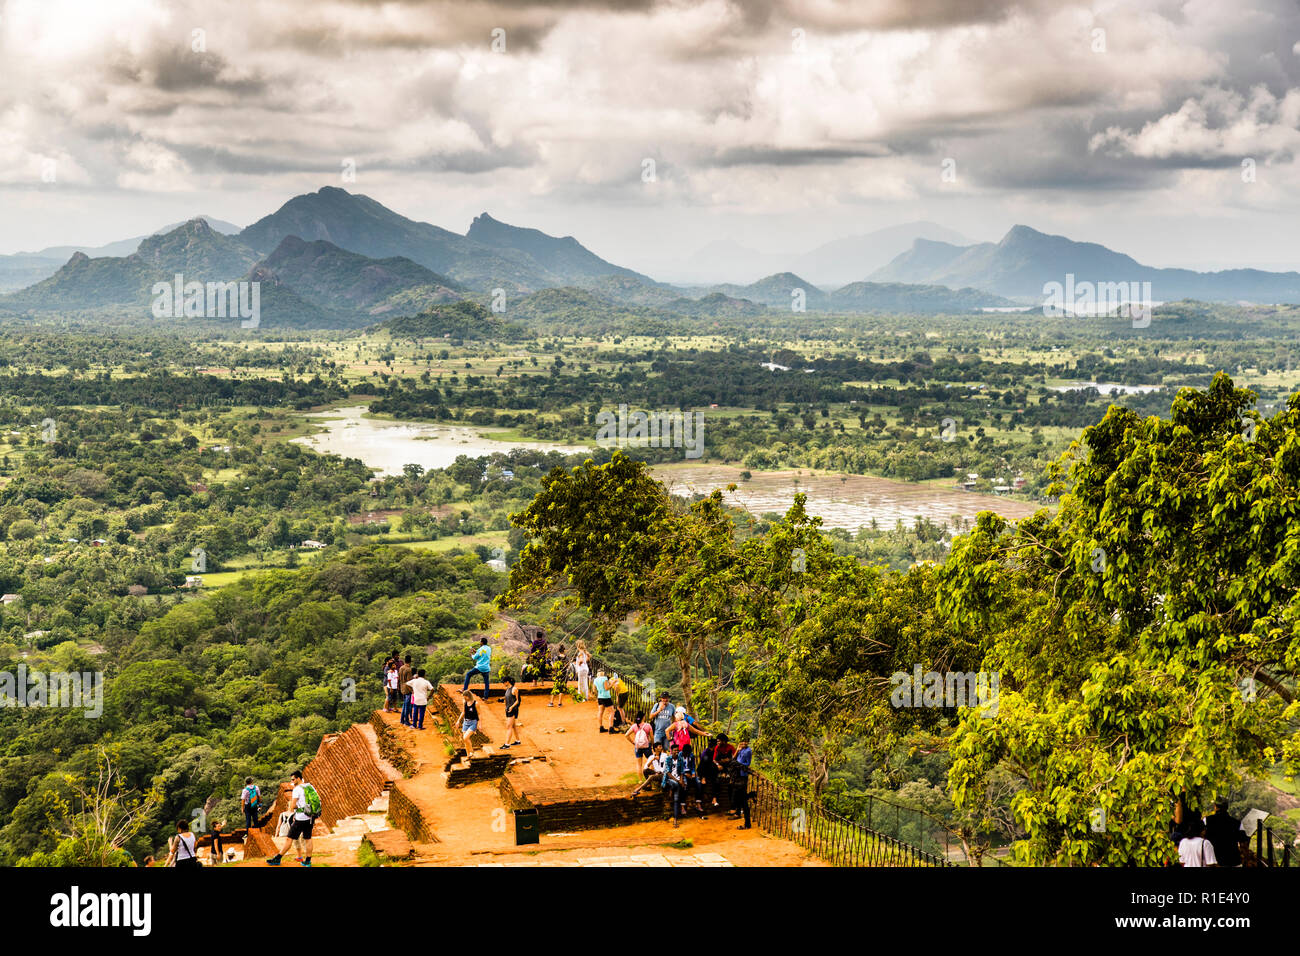 Vue à couper le souffle depuis la forteresse de Sigiriya sur les rizières et les chaînes de montagnes au loin Banque D'Images